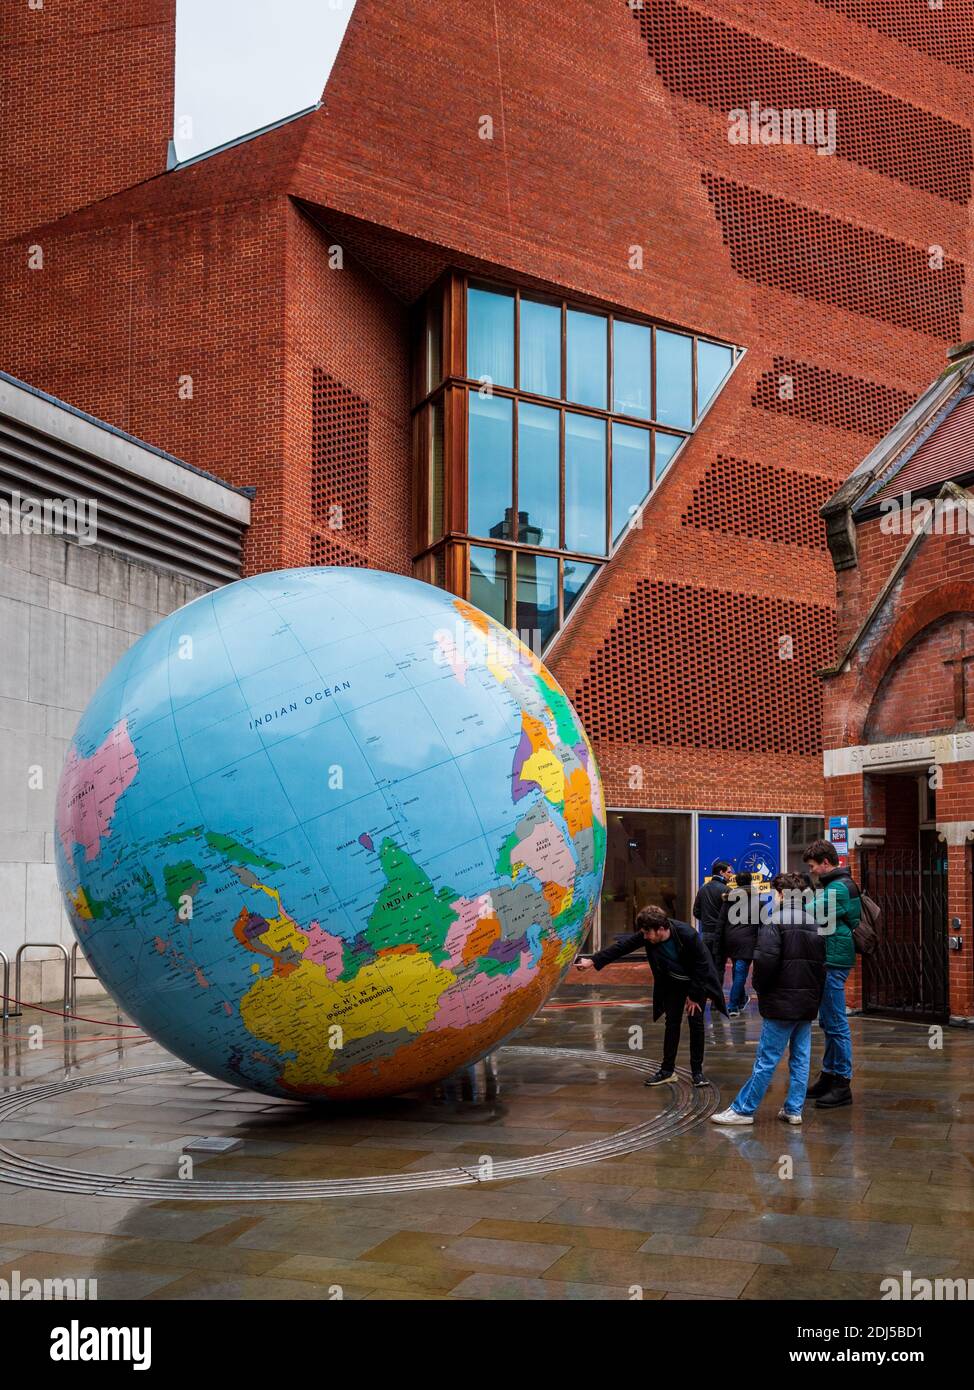 LSE London - große invertierte Weltkugel auf dem London School of Economics Campus im Zentrum Londons. Die Welt wurde von Mark Wallinger auf den Kopf gestellt Stockfoto